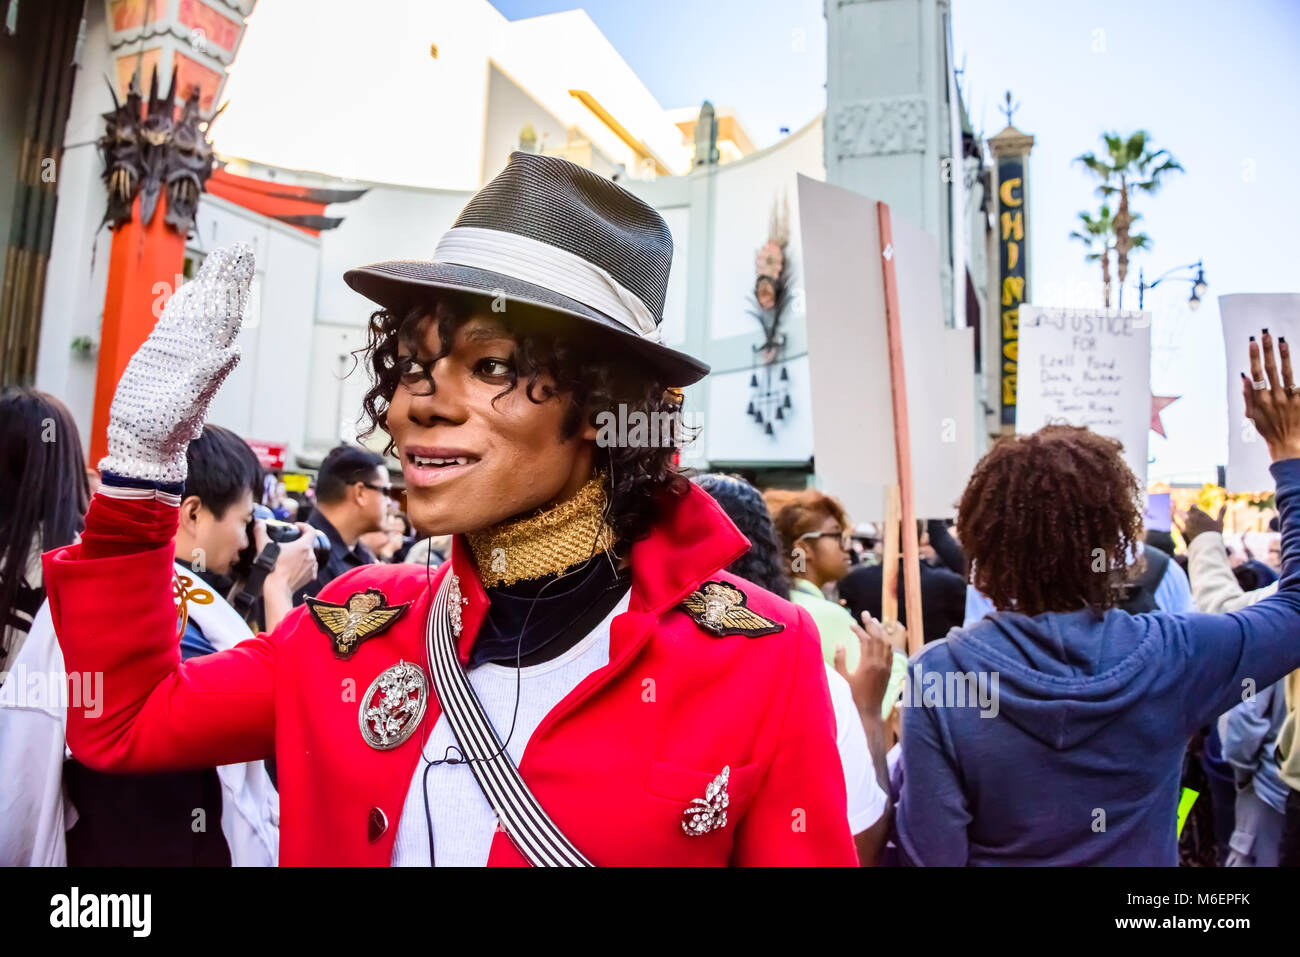 Michael Jackson Imitator, Hands up Nicht schießen Schwarz Leben Angelegenheit Protestkundgebung, Hollywood Walk of Fame, L.A., Kalifornien Stockfoto